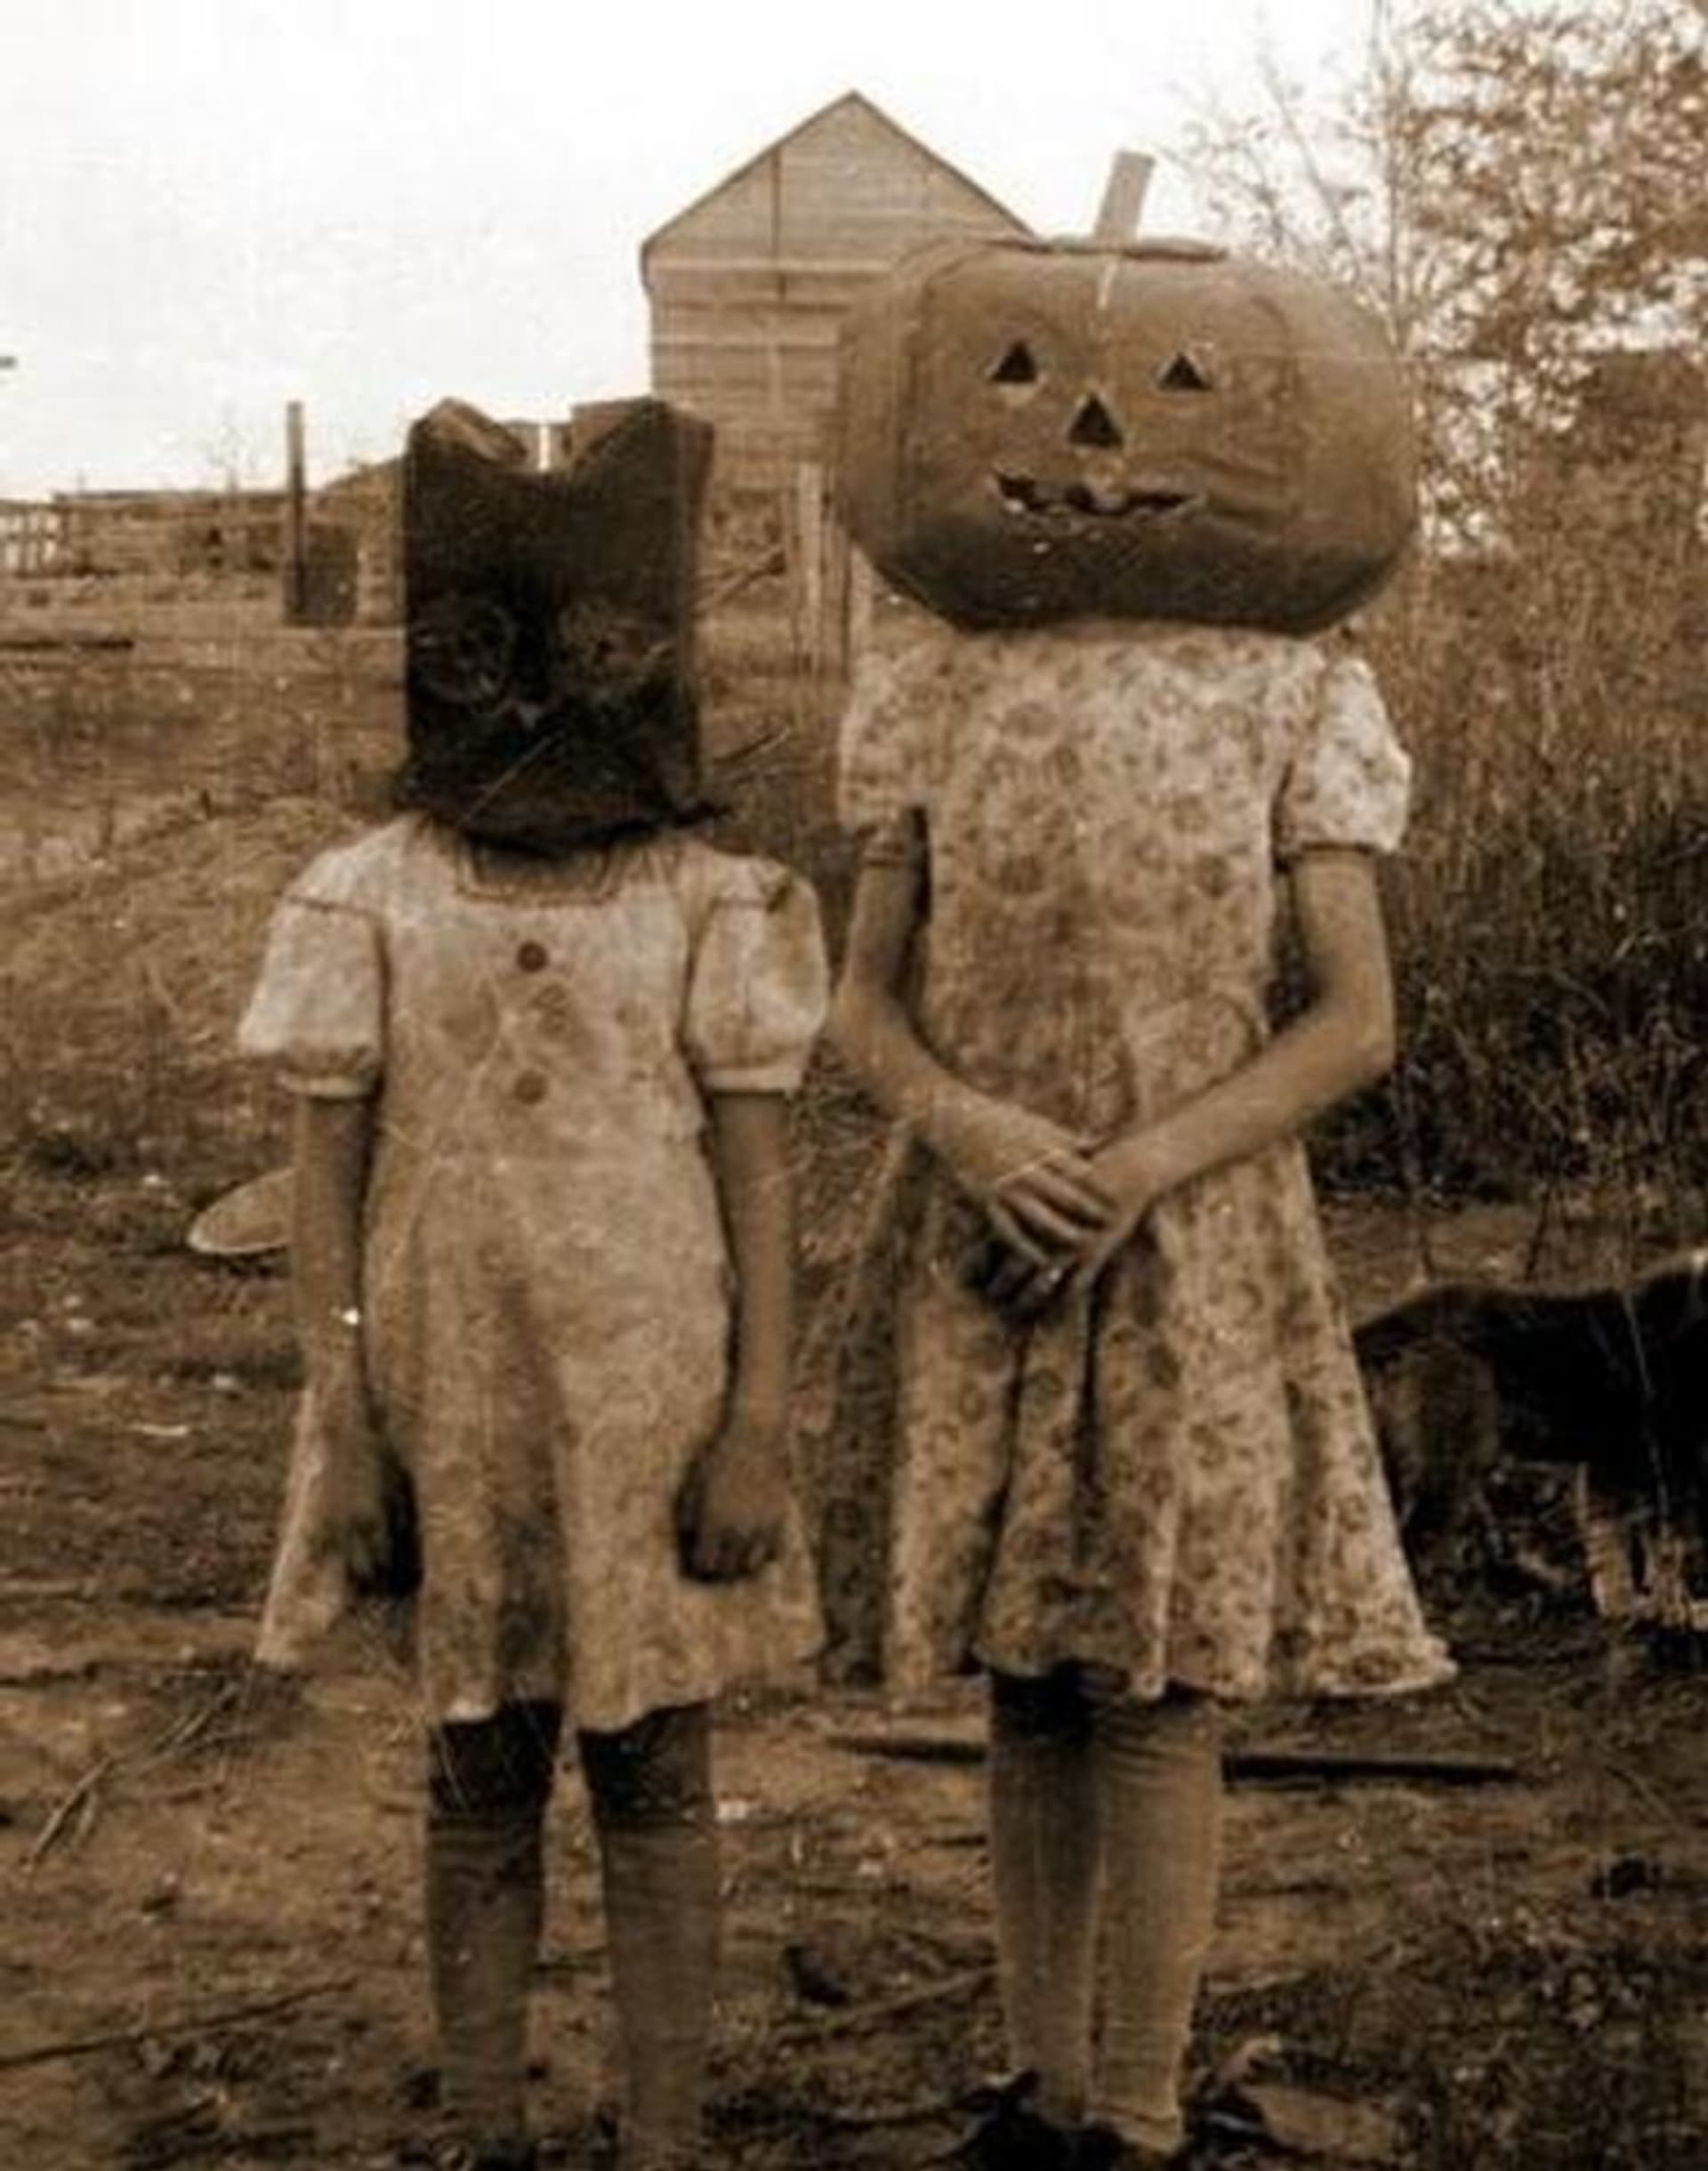 Halloweenské kostýmy před sto lety